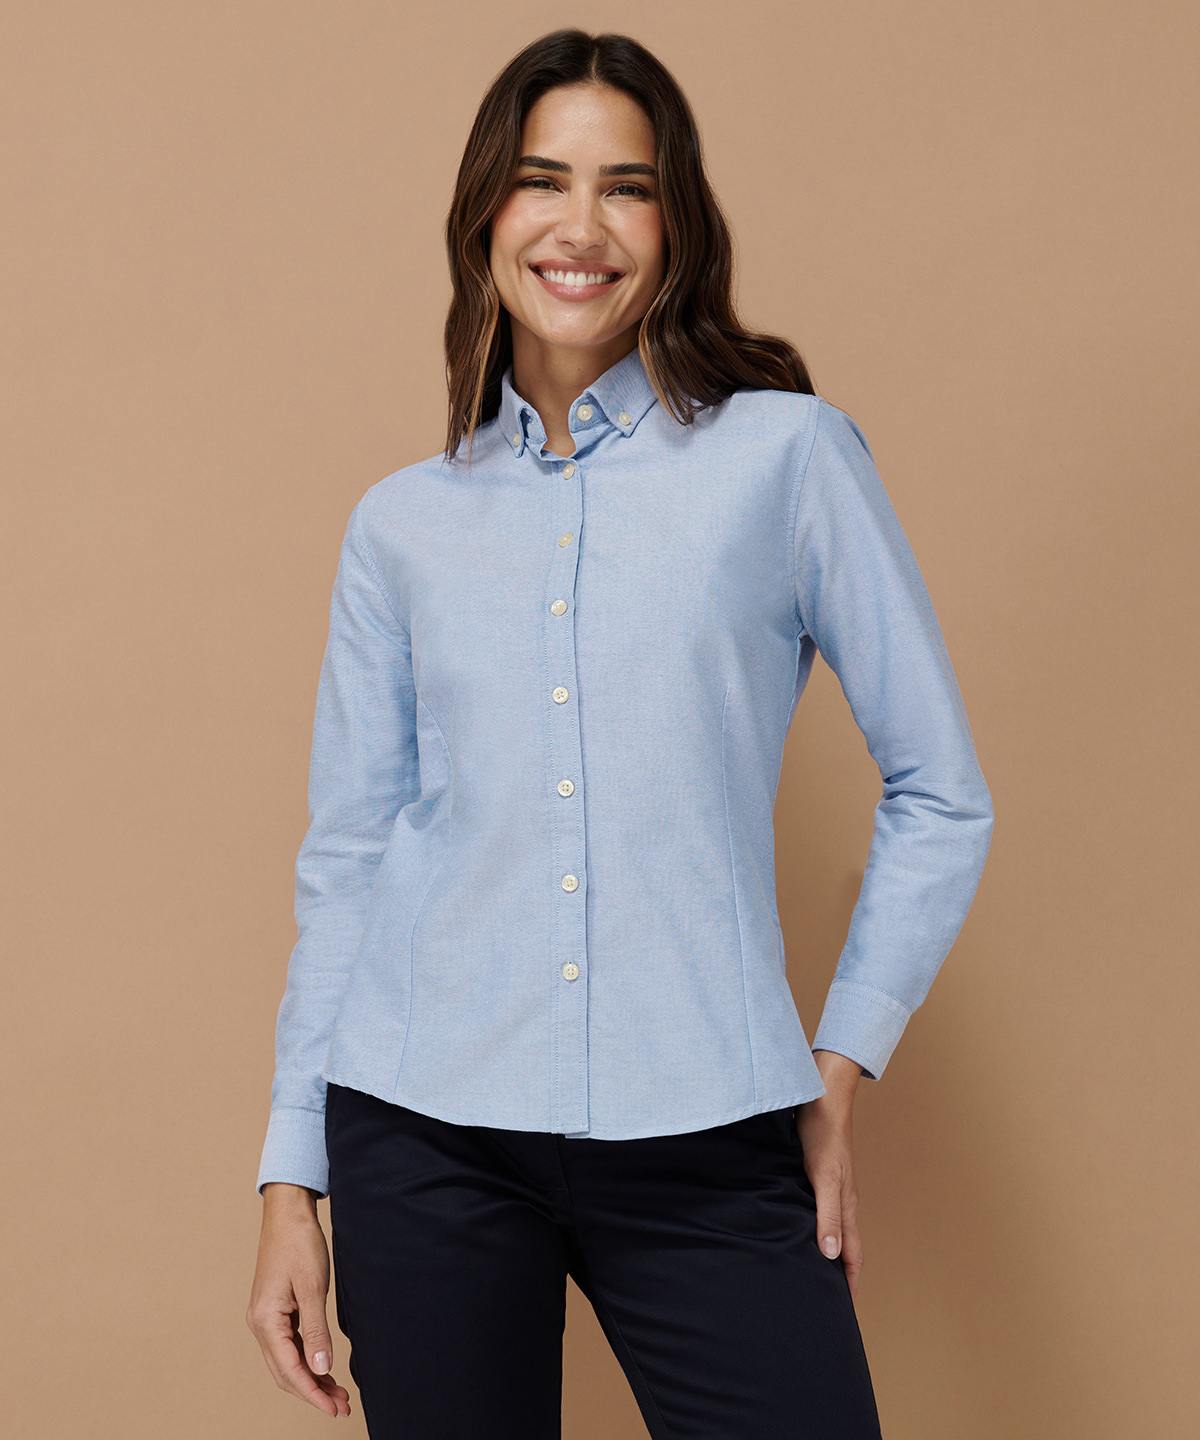 Women's modern long sleeve Oxford shirt